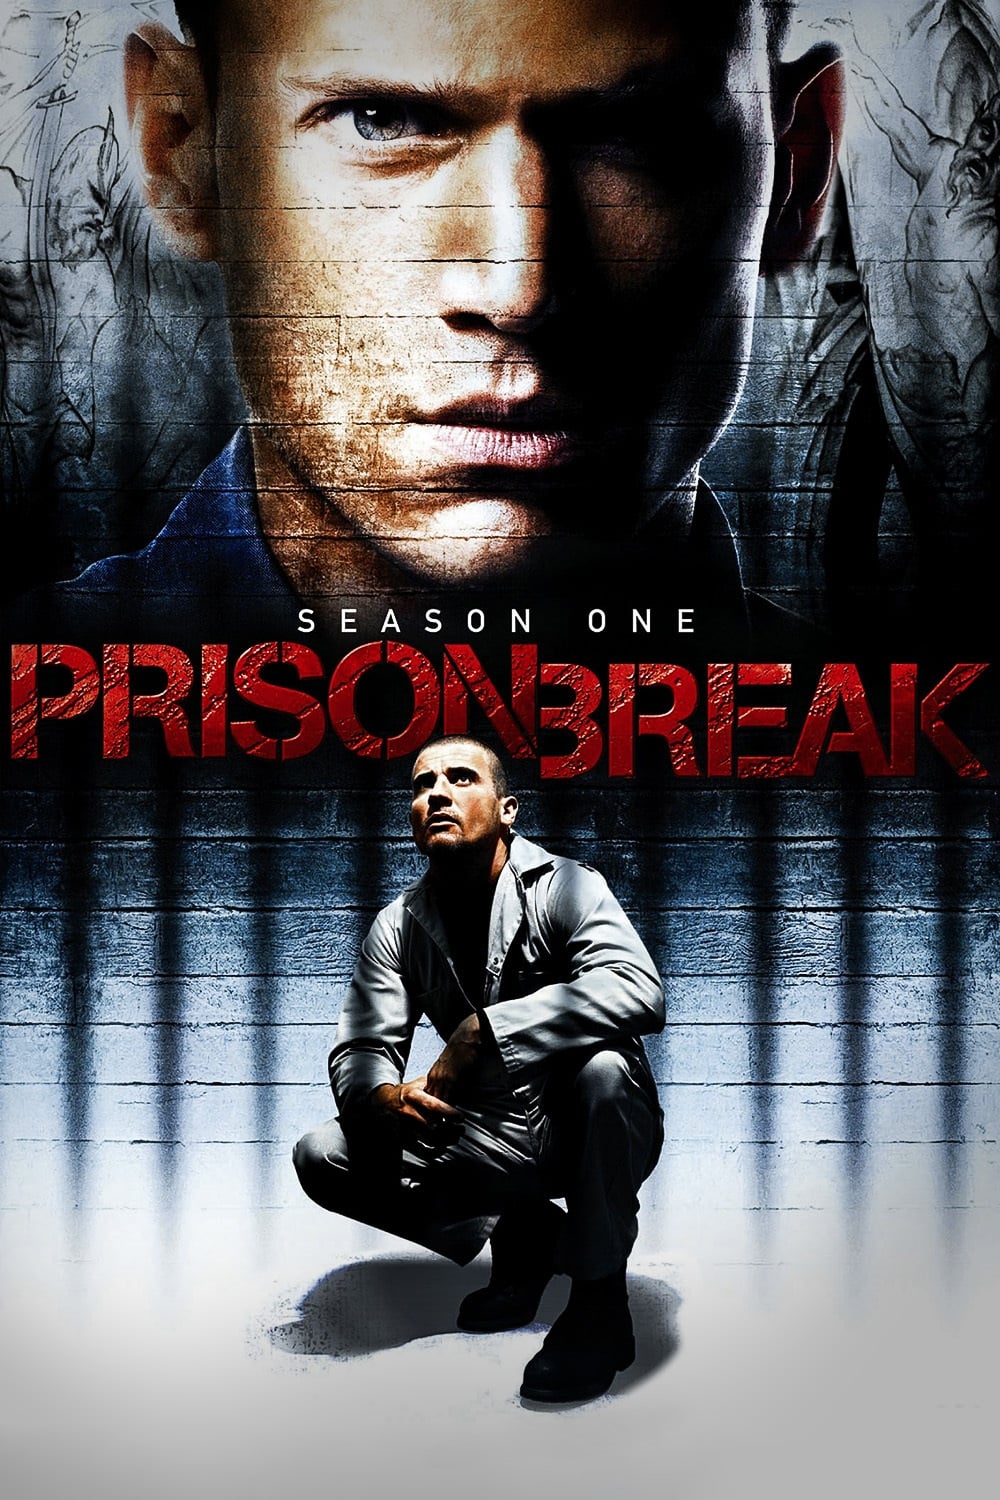 Prison Break (TV Series 2005–2017) - IMDb